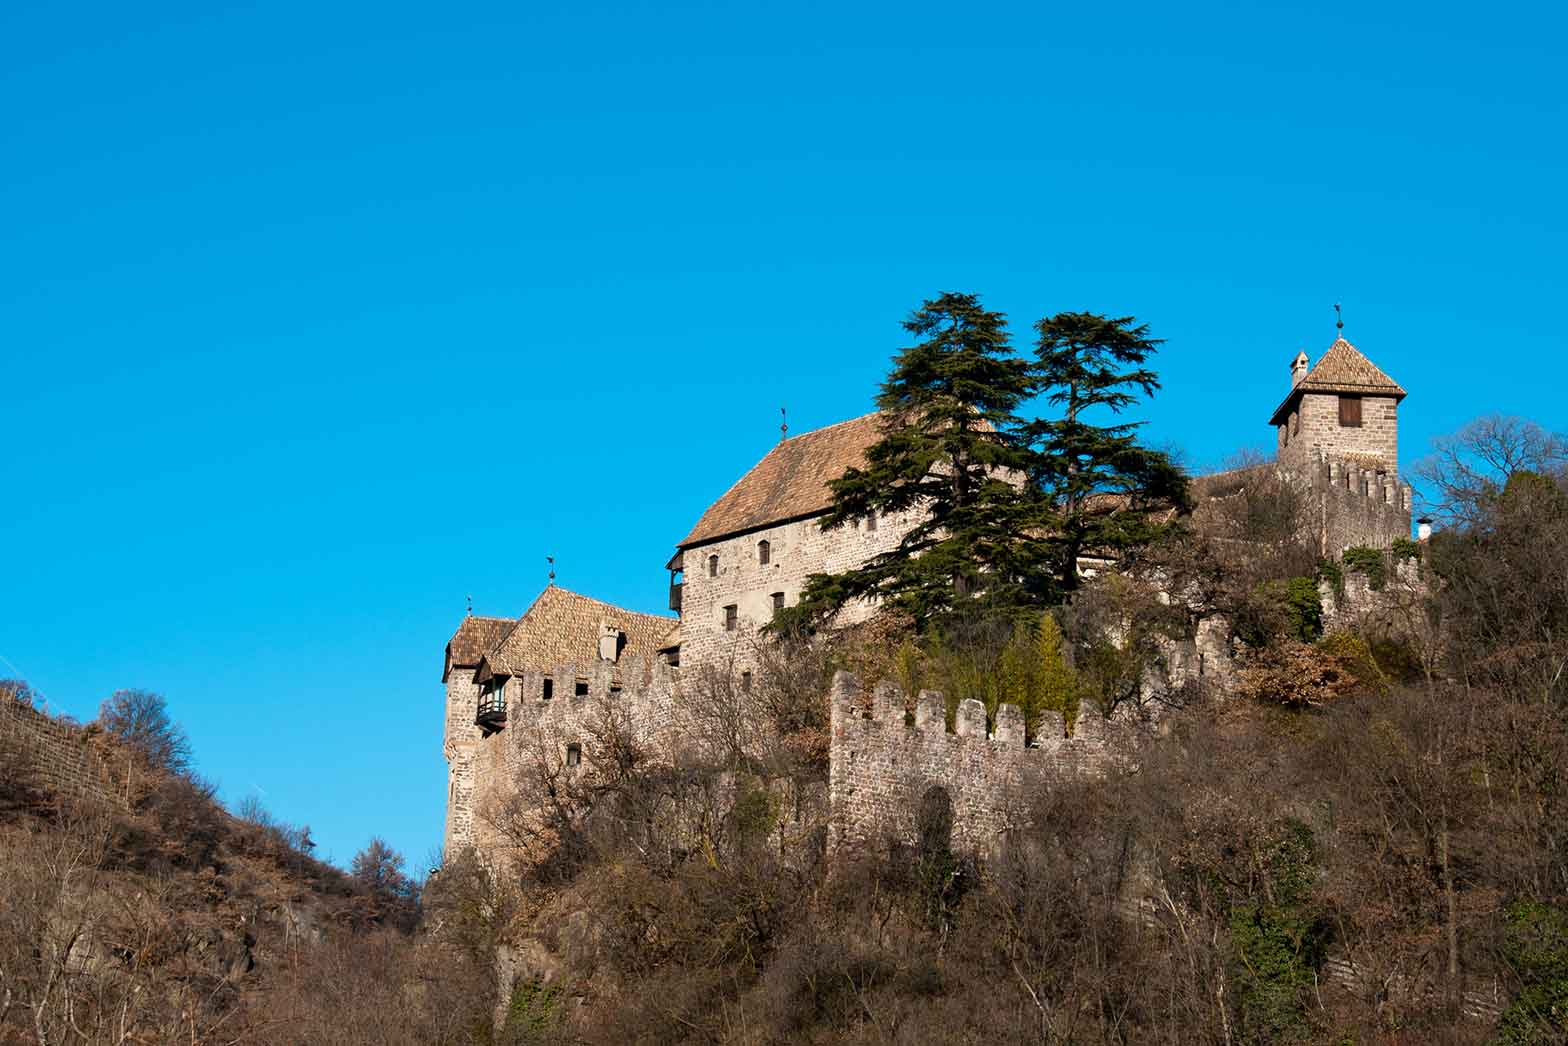 Castle Roncolo, near Bolzano, Italy